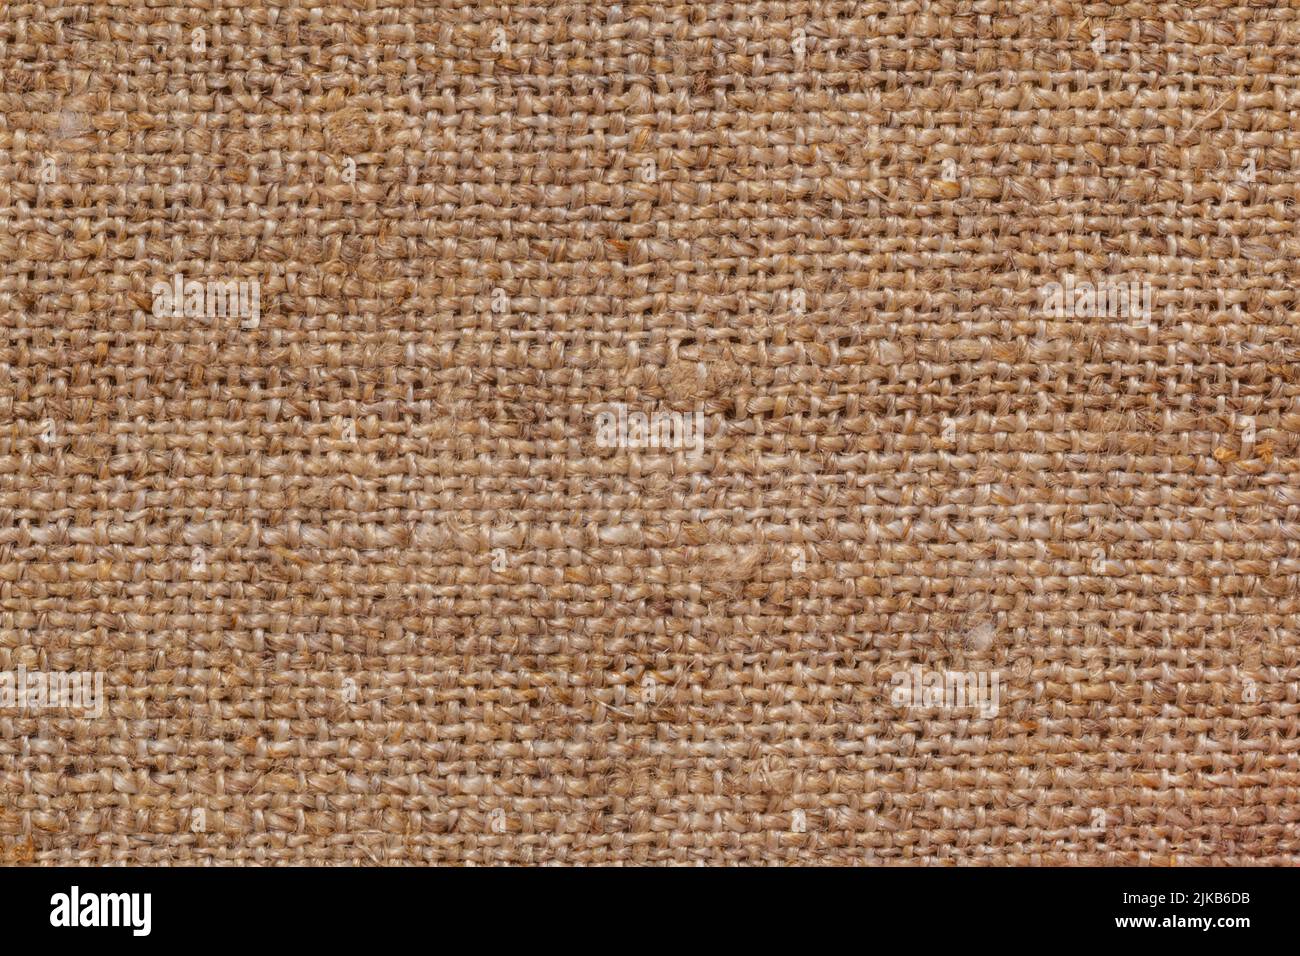 primer plano de textura de sacking marrón Foto de stock